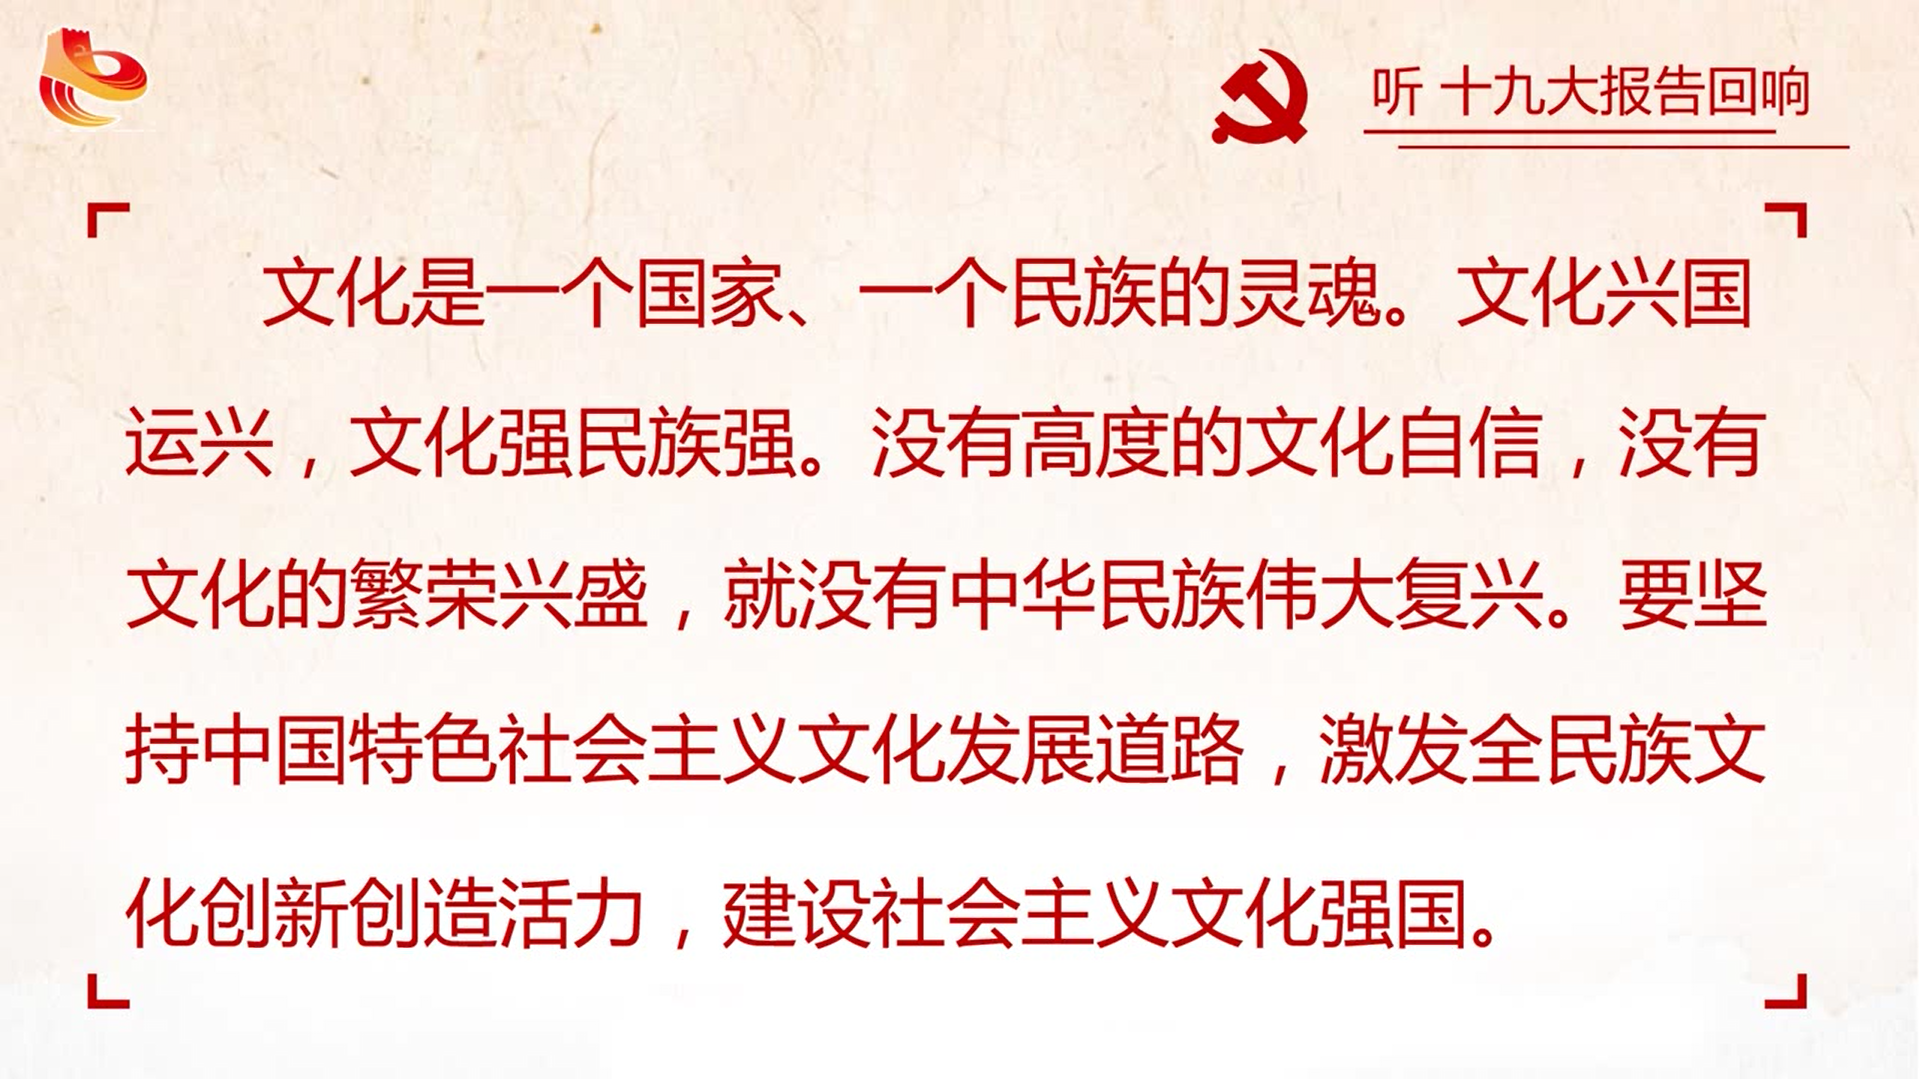 闫思宇)党的十九大报告提出,坚定文化自信,推动社会主义文化繁荣兴盛